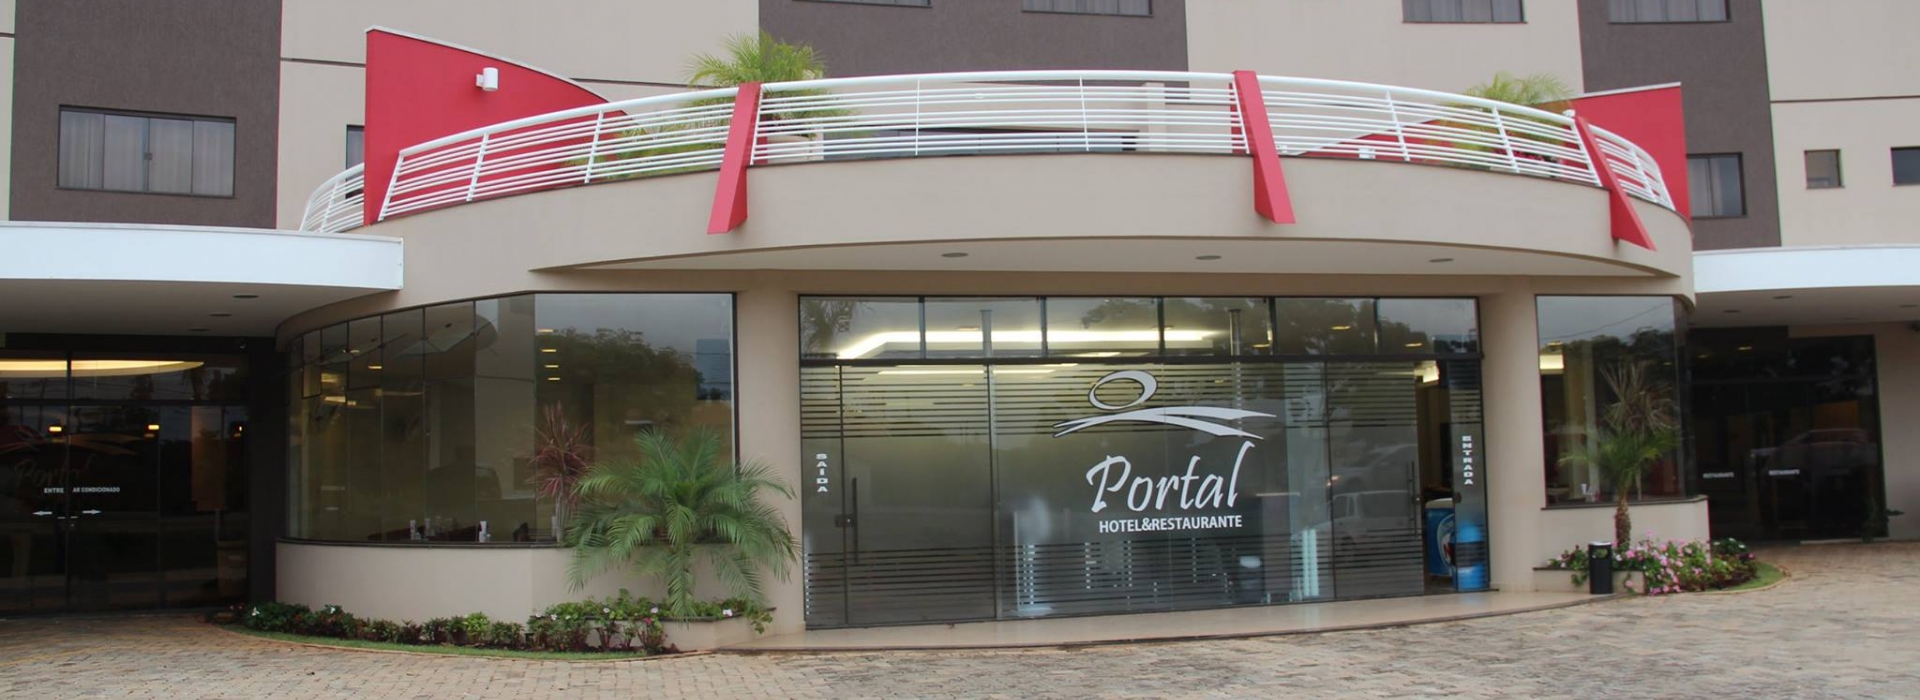 Portal Hotel & Restaurante